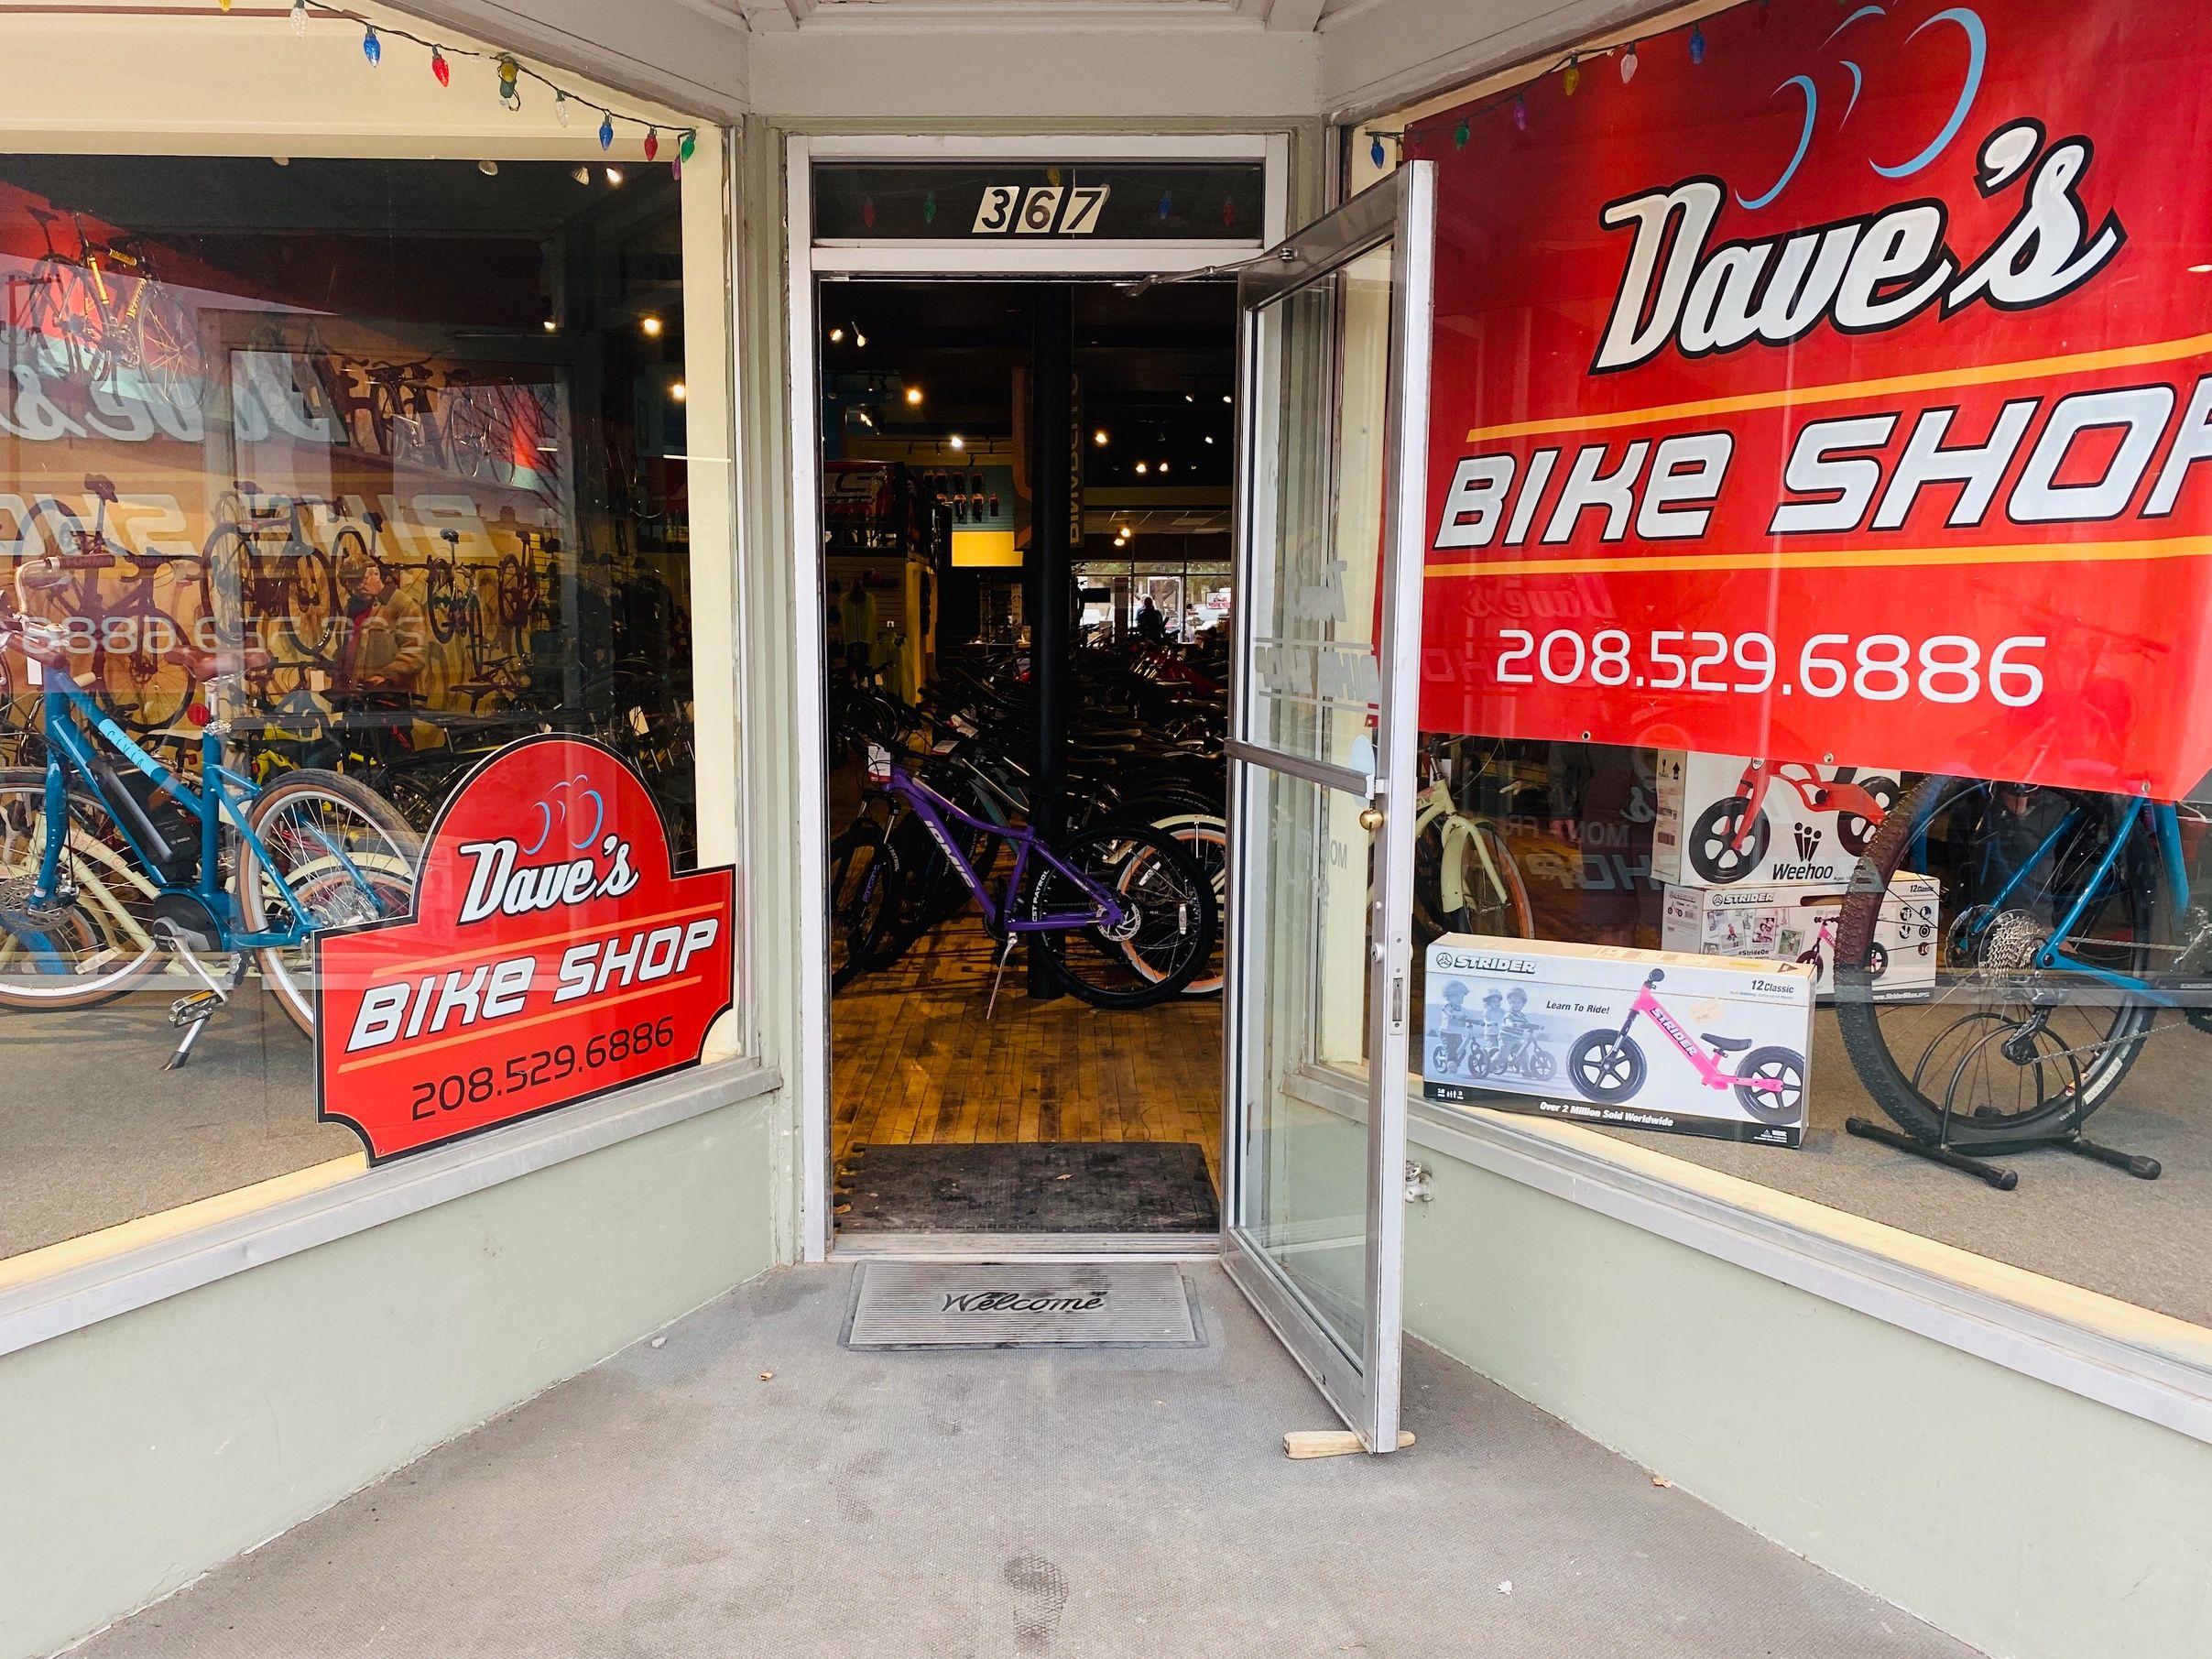 Door Open to Dave's Bike Shop Business